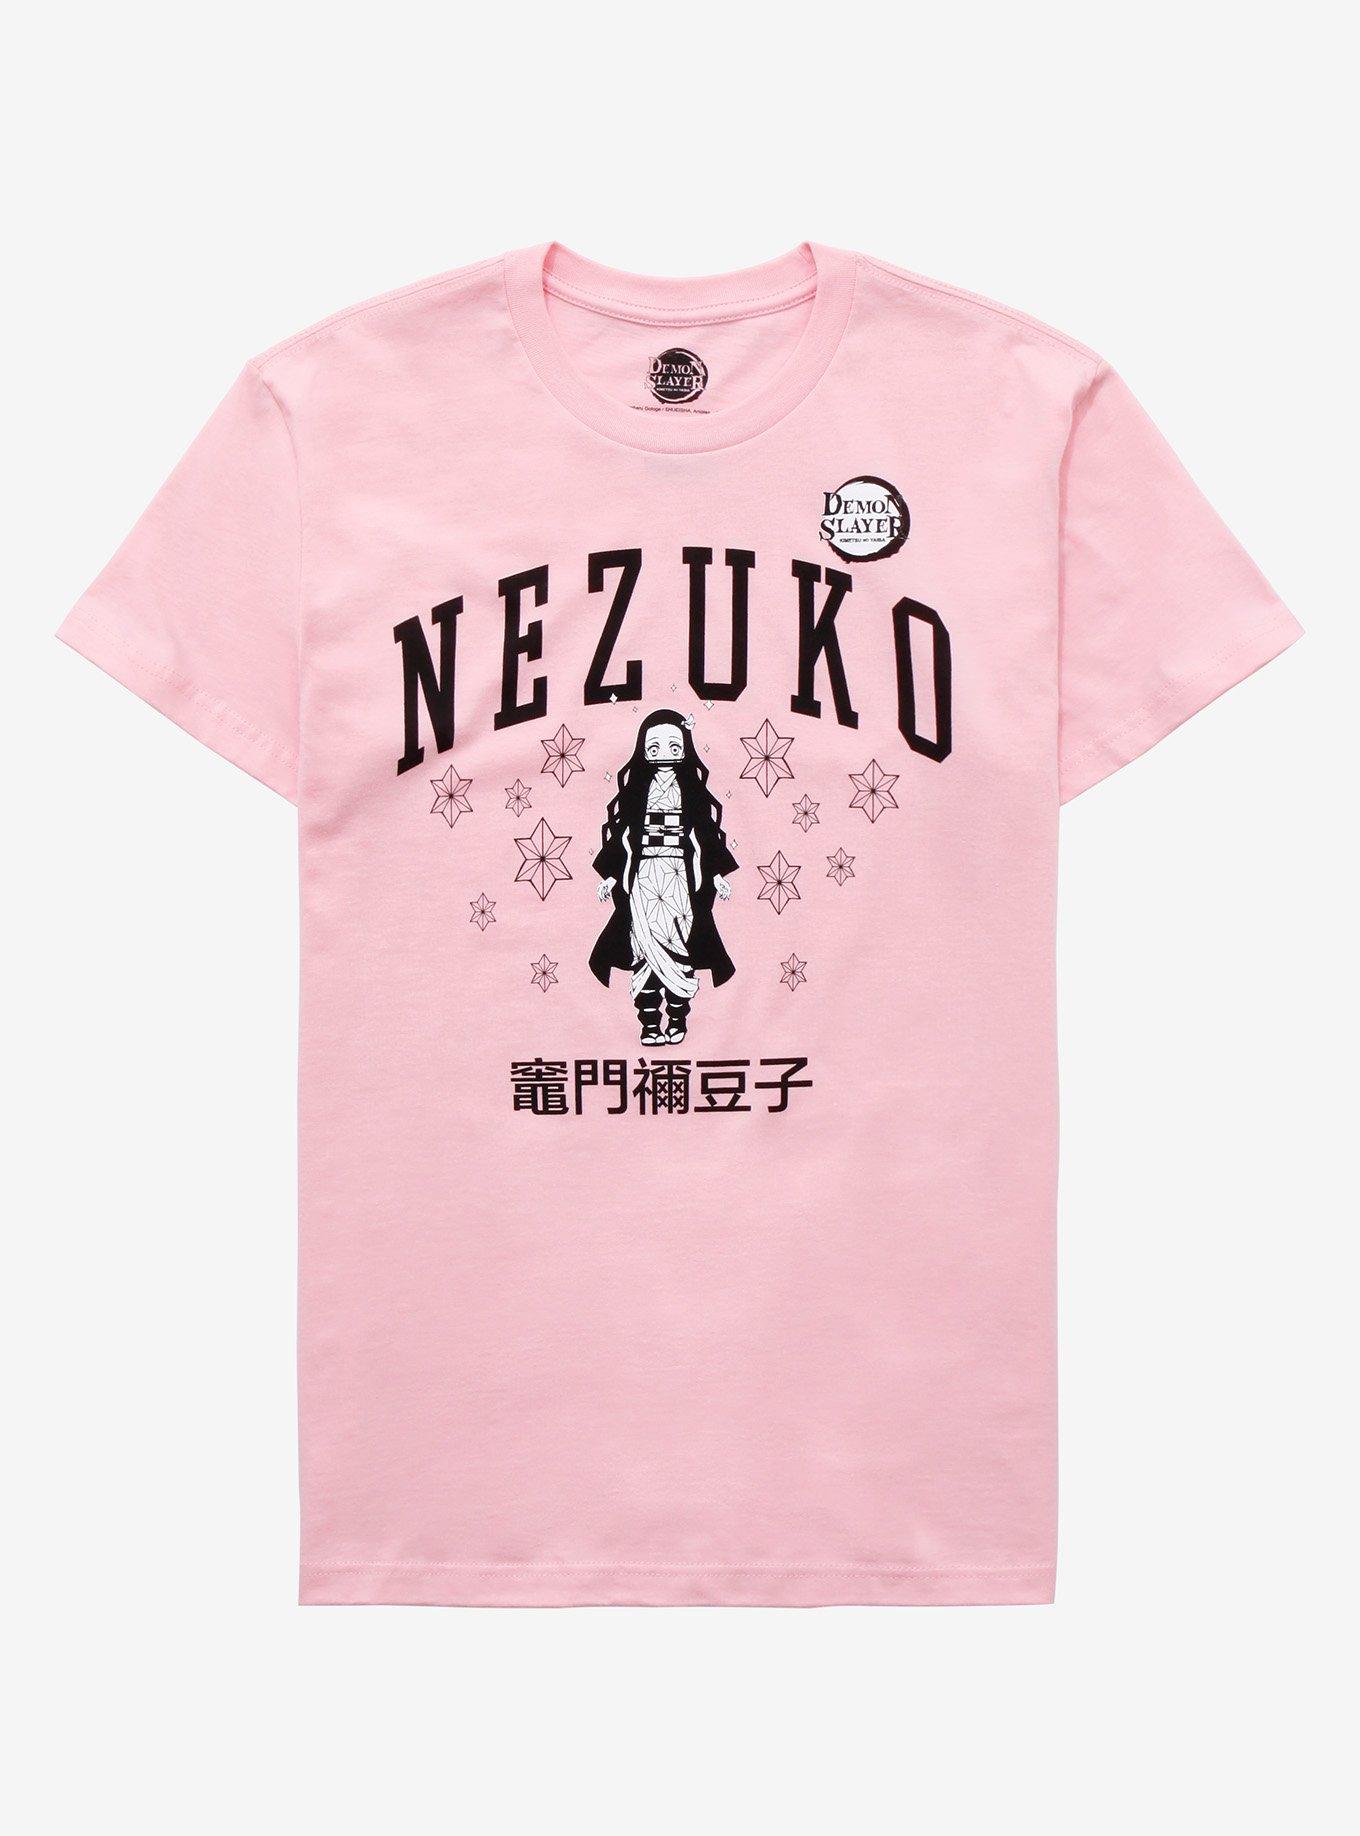 Tanjiro and Nezuko Retro Art Demon Slayer T-Shirt Zip Pouch by